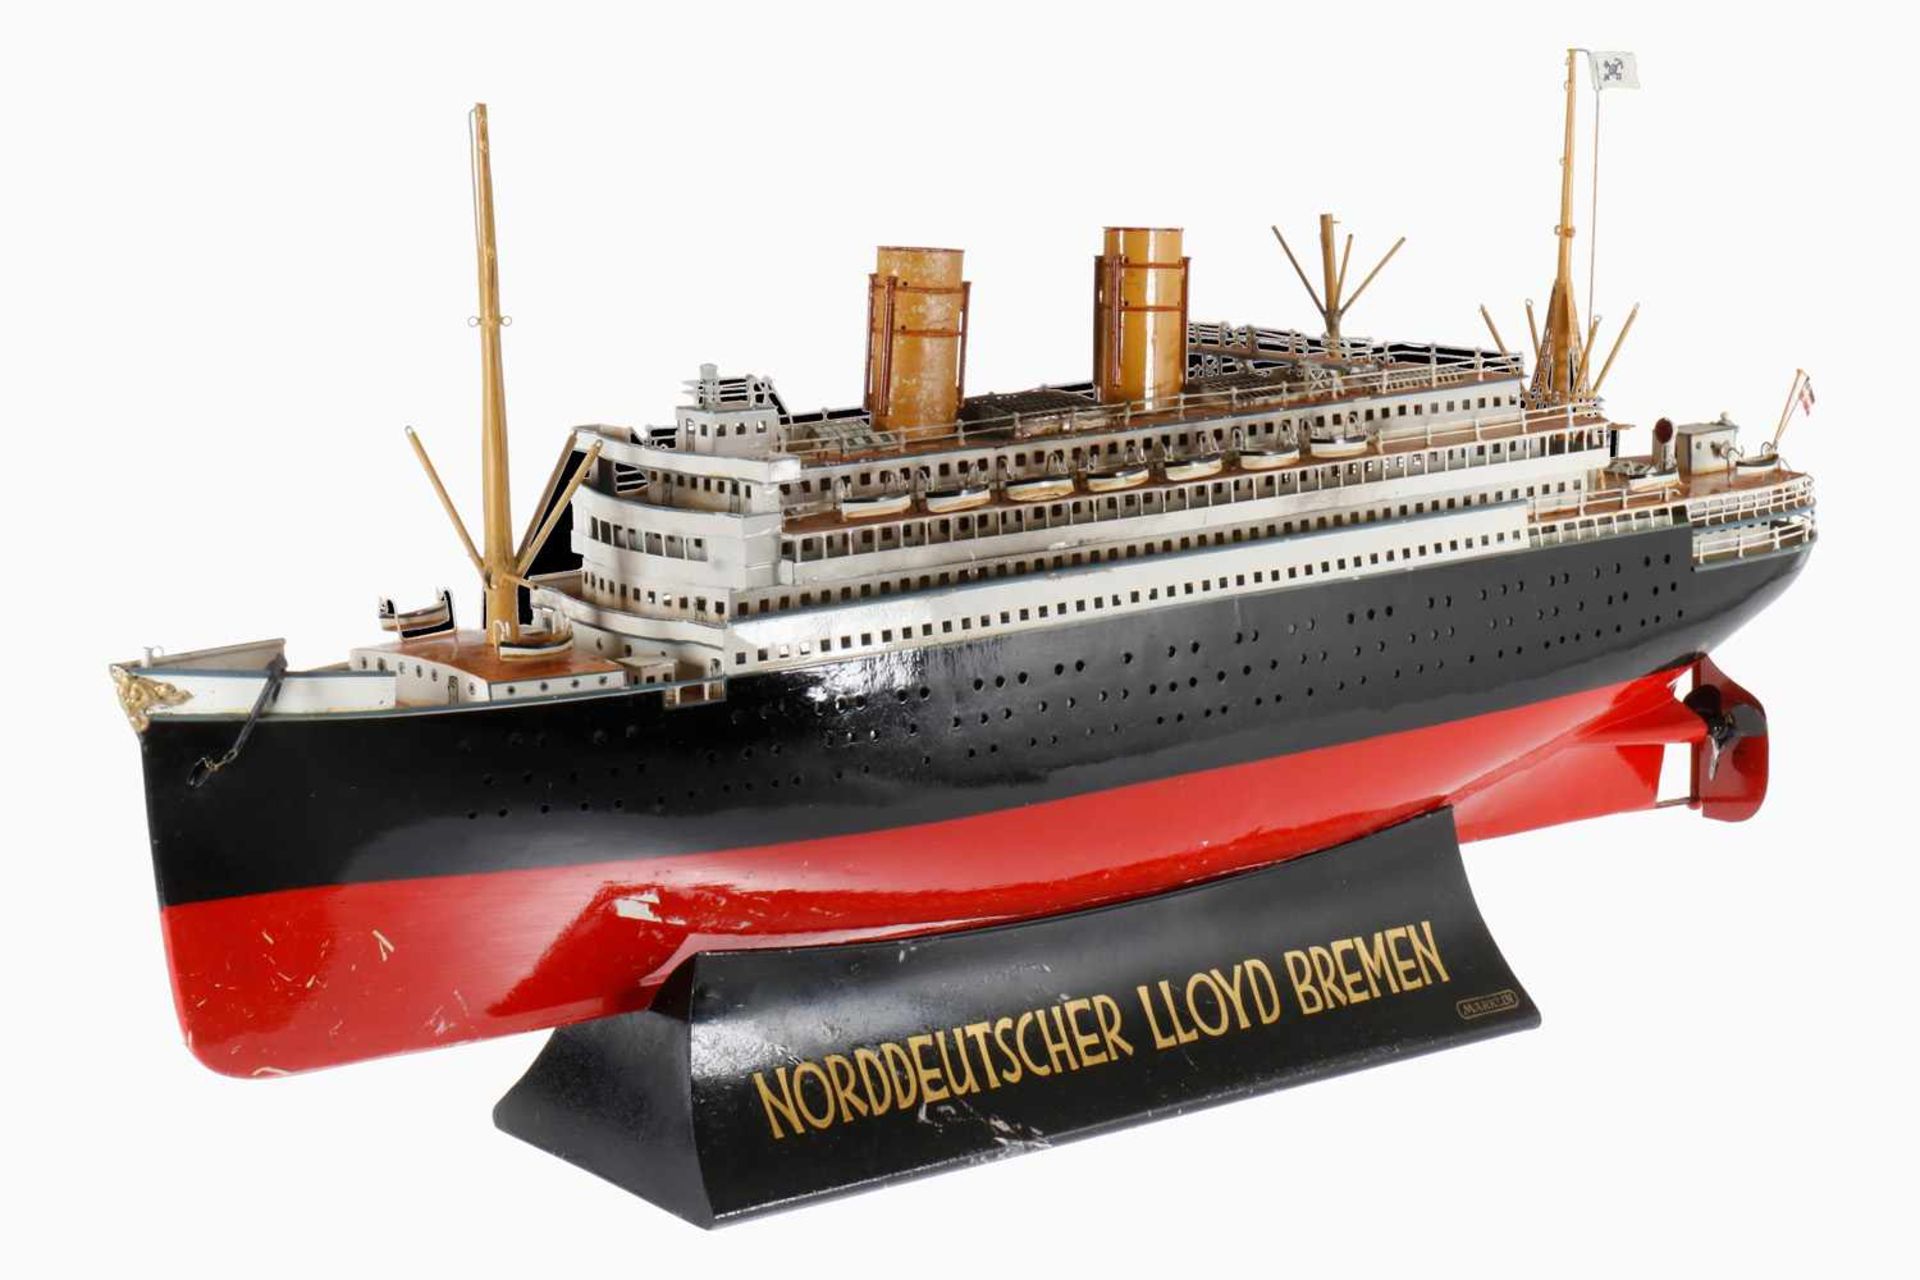 Märklin Reisebüro-Modell, Dampfschiff für Norddeutscher Lloyd Bremen, Doppelschrauben-Dampfer,